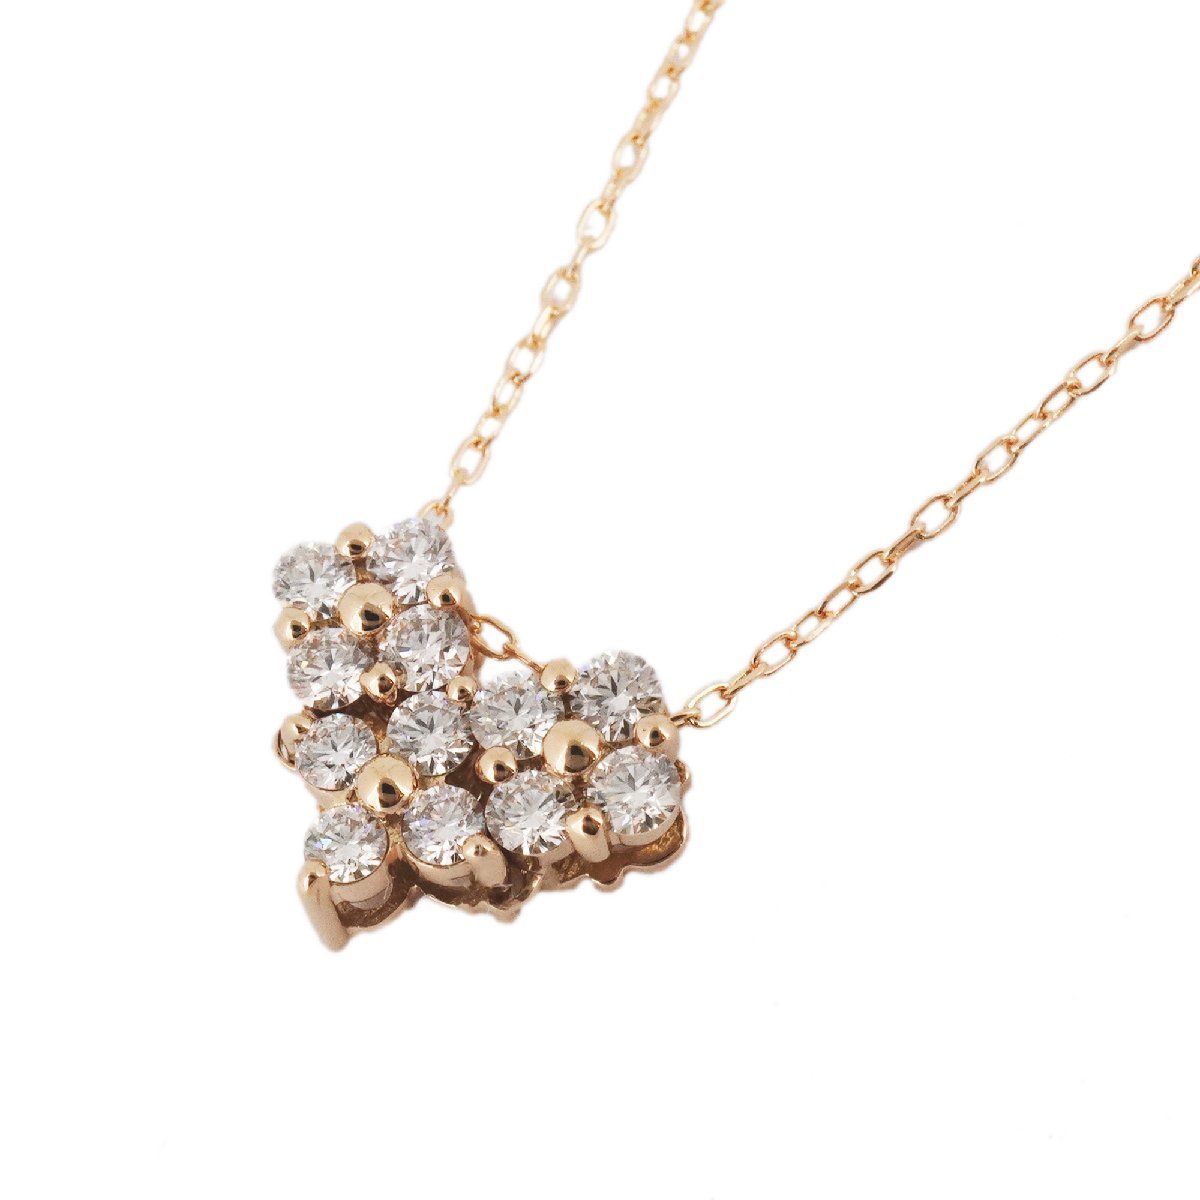 【3jb010】ダイヤモンド 0.3ct メレダイヤ 花 フラワー ハート K18PG ピンクゴールド ネックレス ペンダント